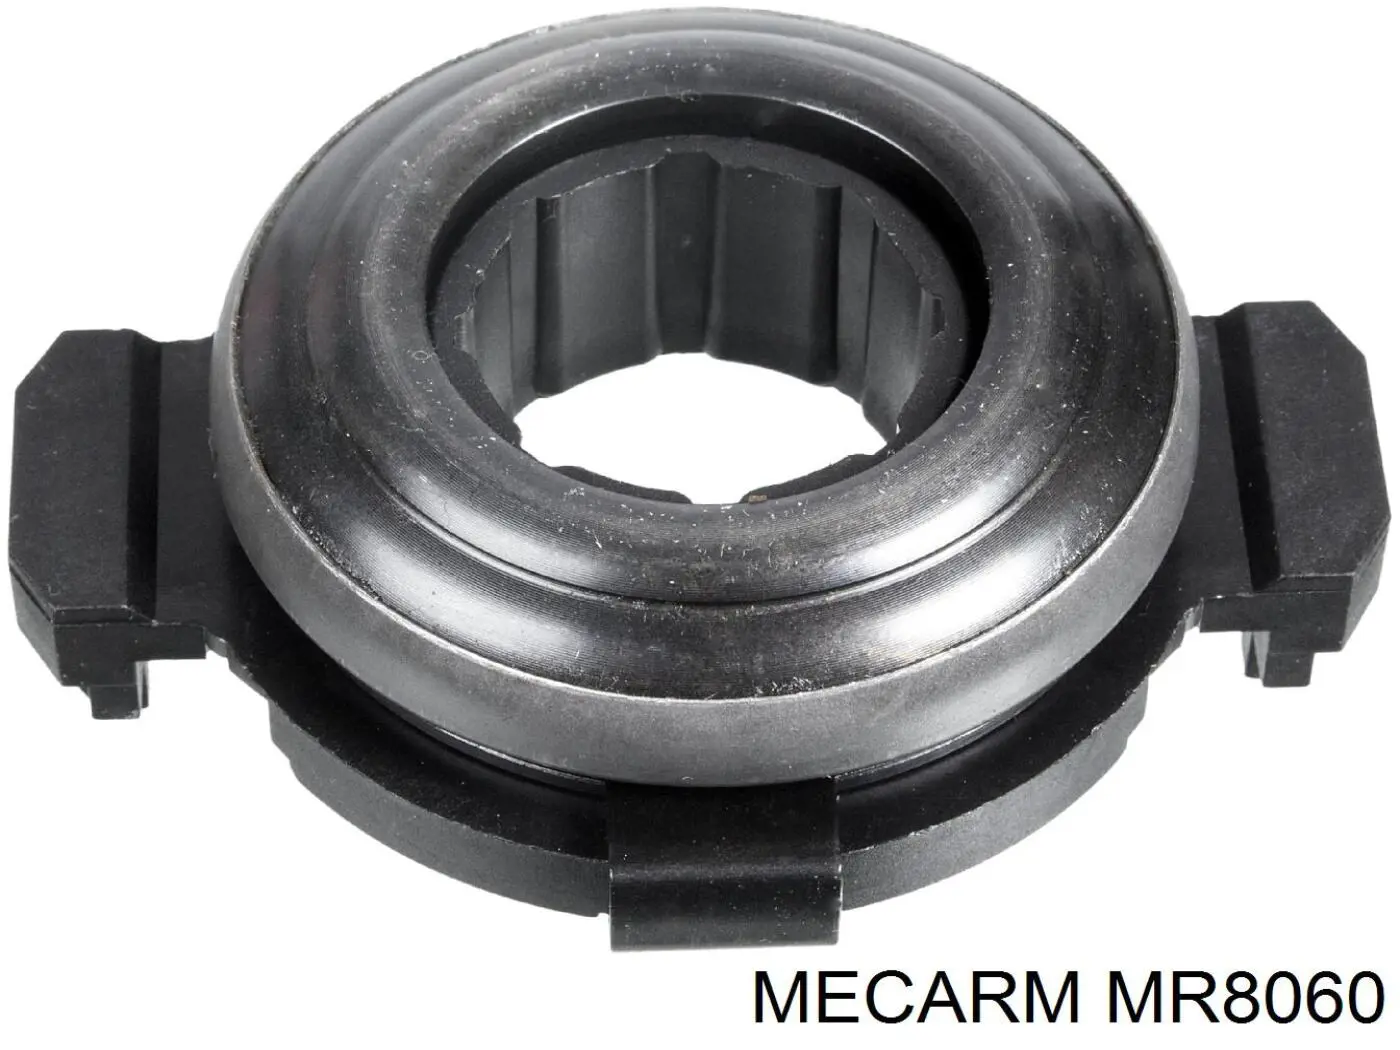 MR8060 Mecarm подшипник сцепления выжимной